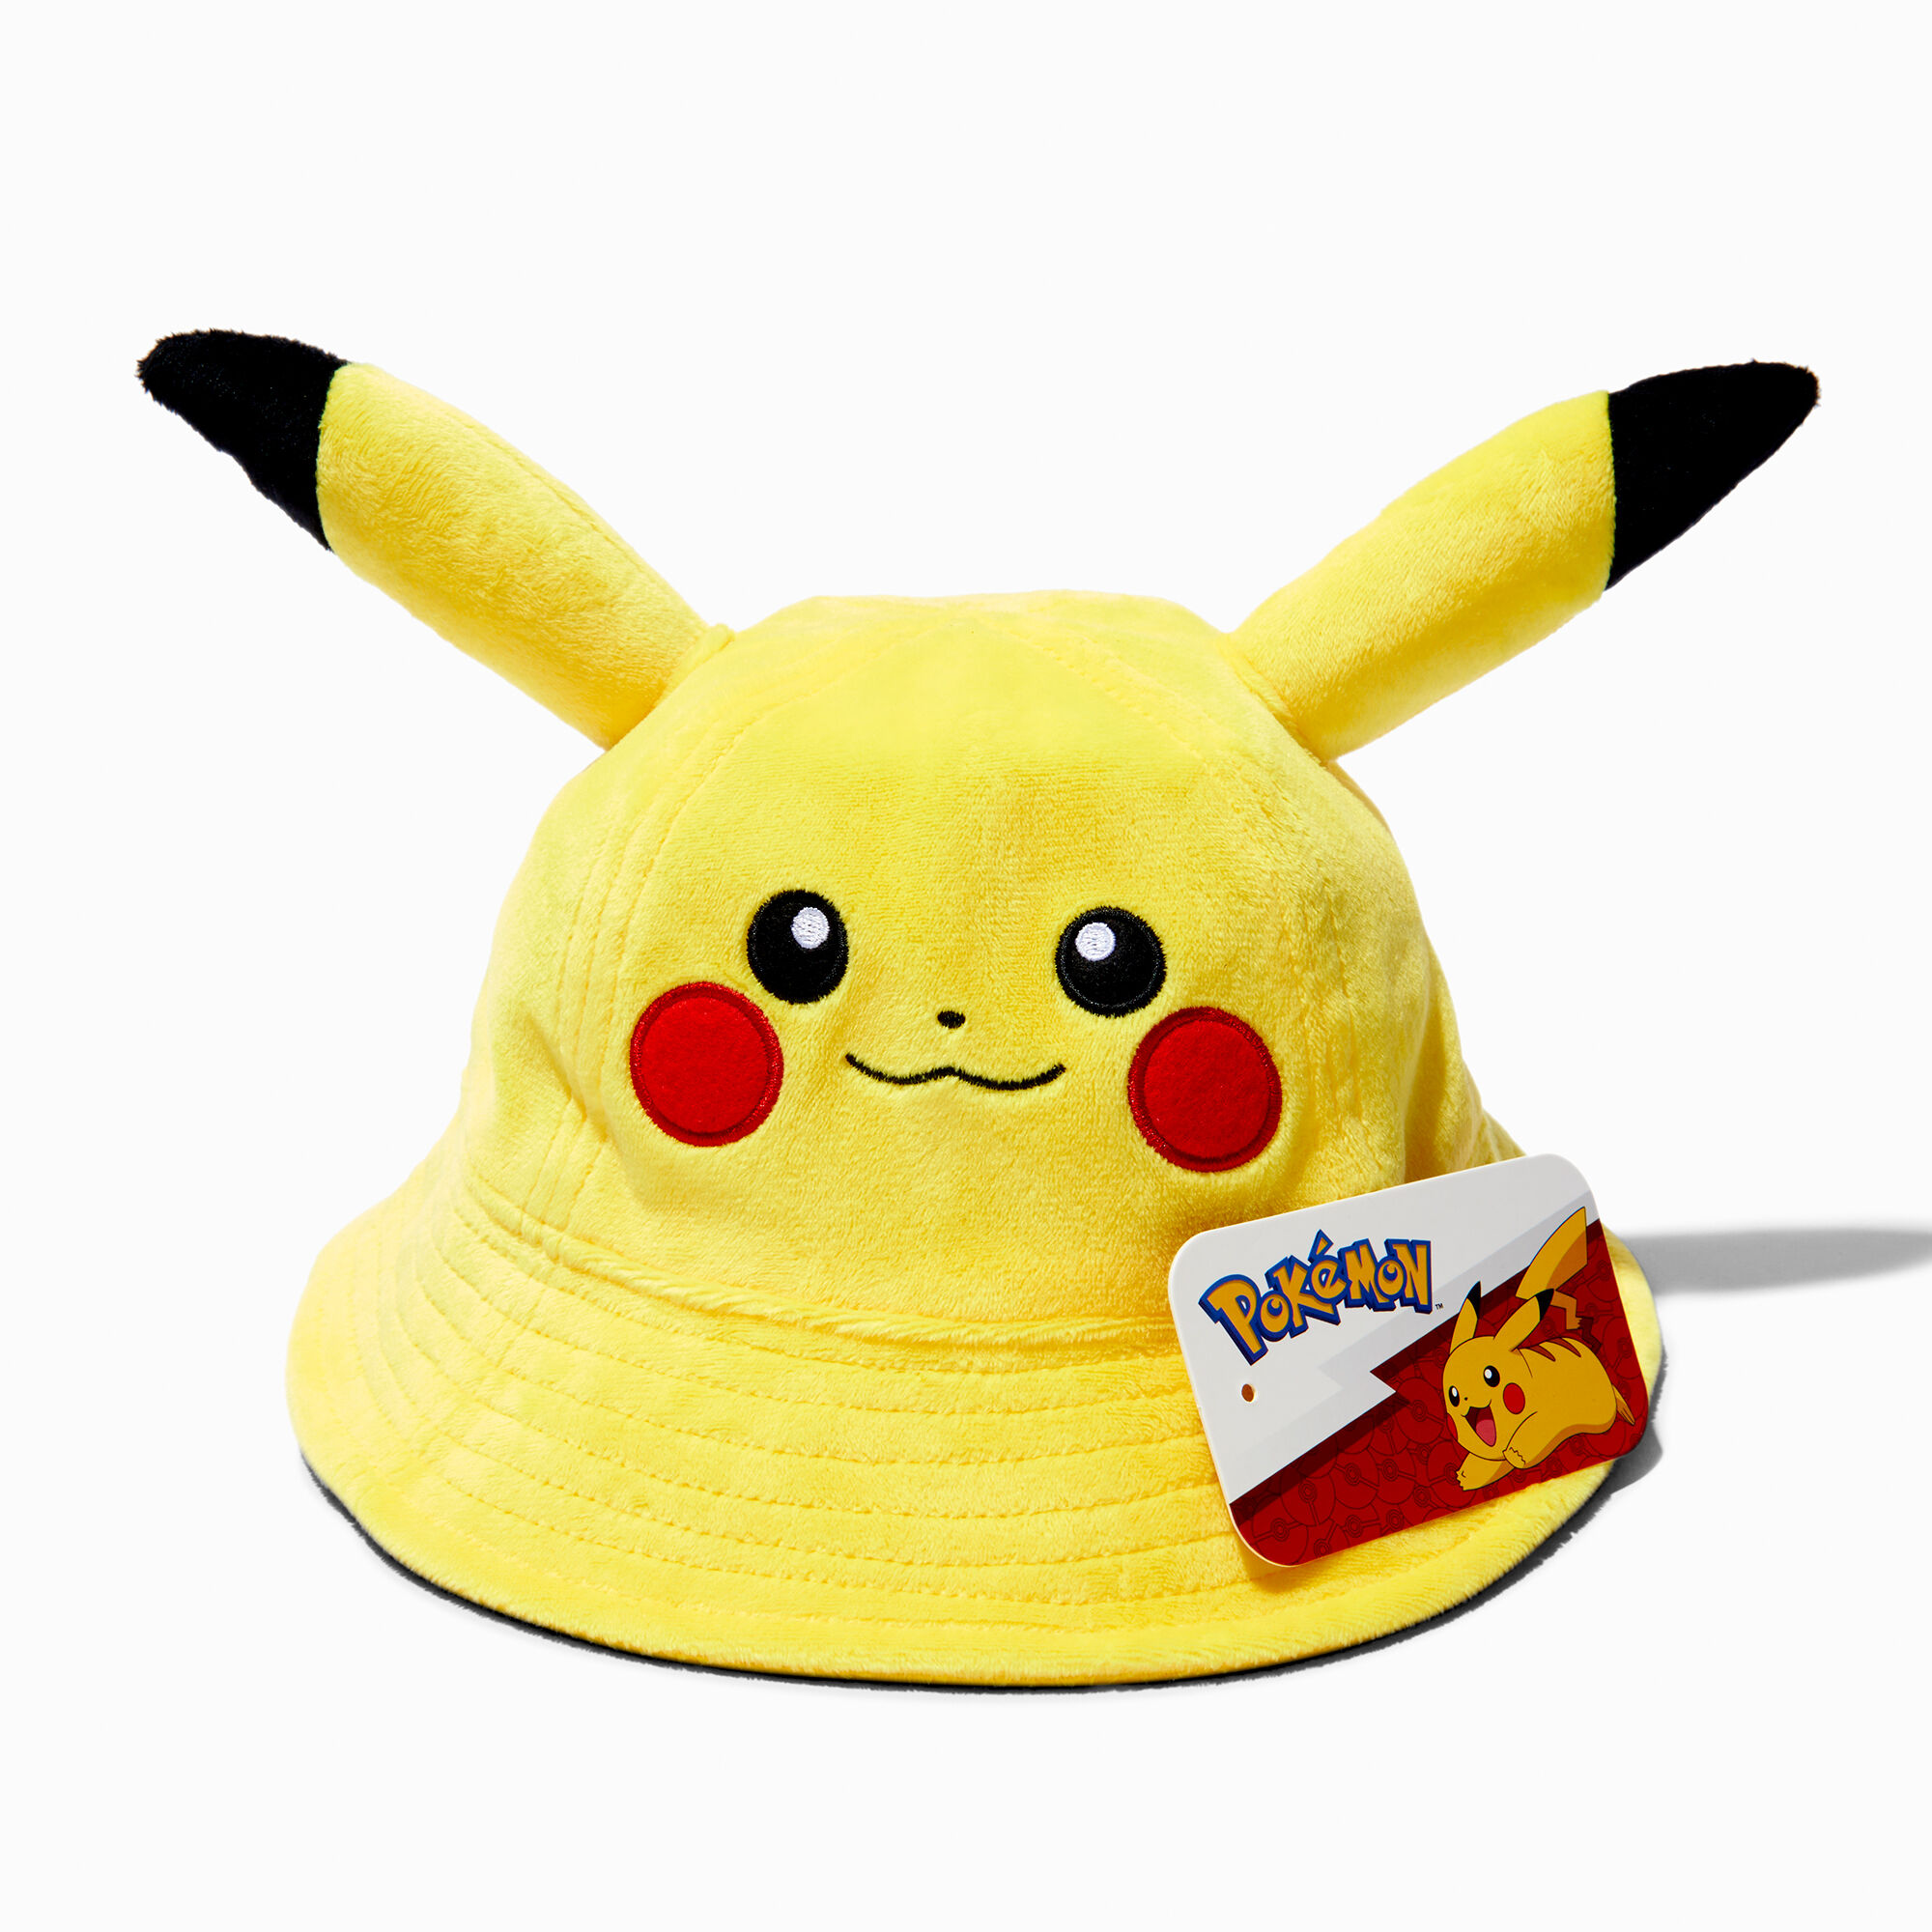 View Claires Pokémon Pikachu 3D Ear Bucket Hat information